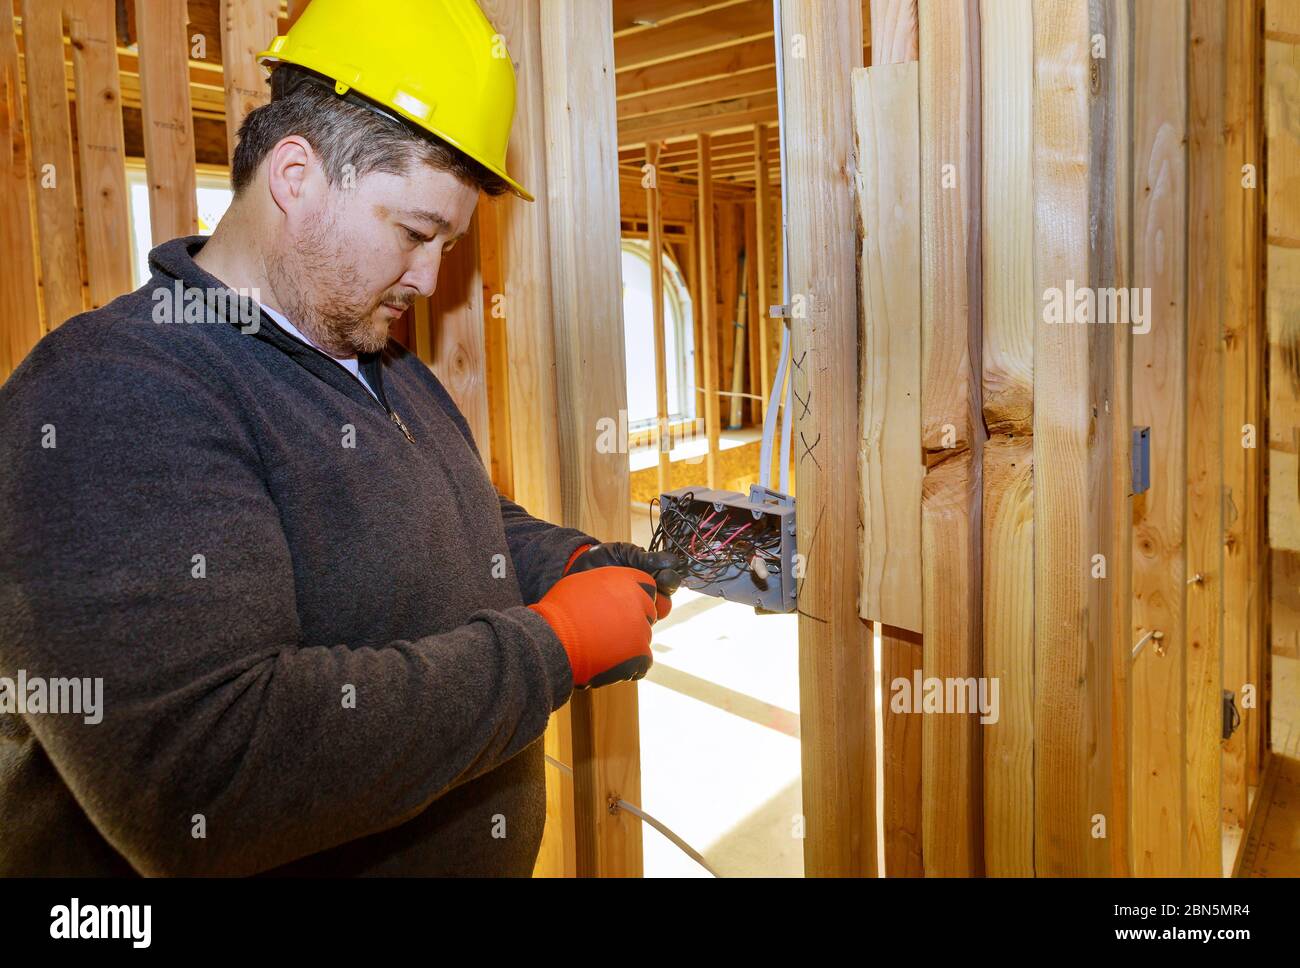 Électricien acheminant les fils dans le connecteur électrique, les prises électriques sur le mur à l'intérieur d'une maison de cadre de poutres en bois Banque D'Images